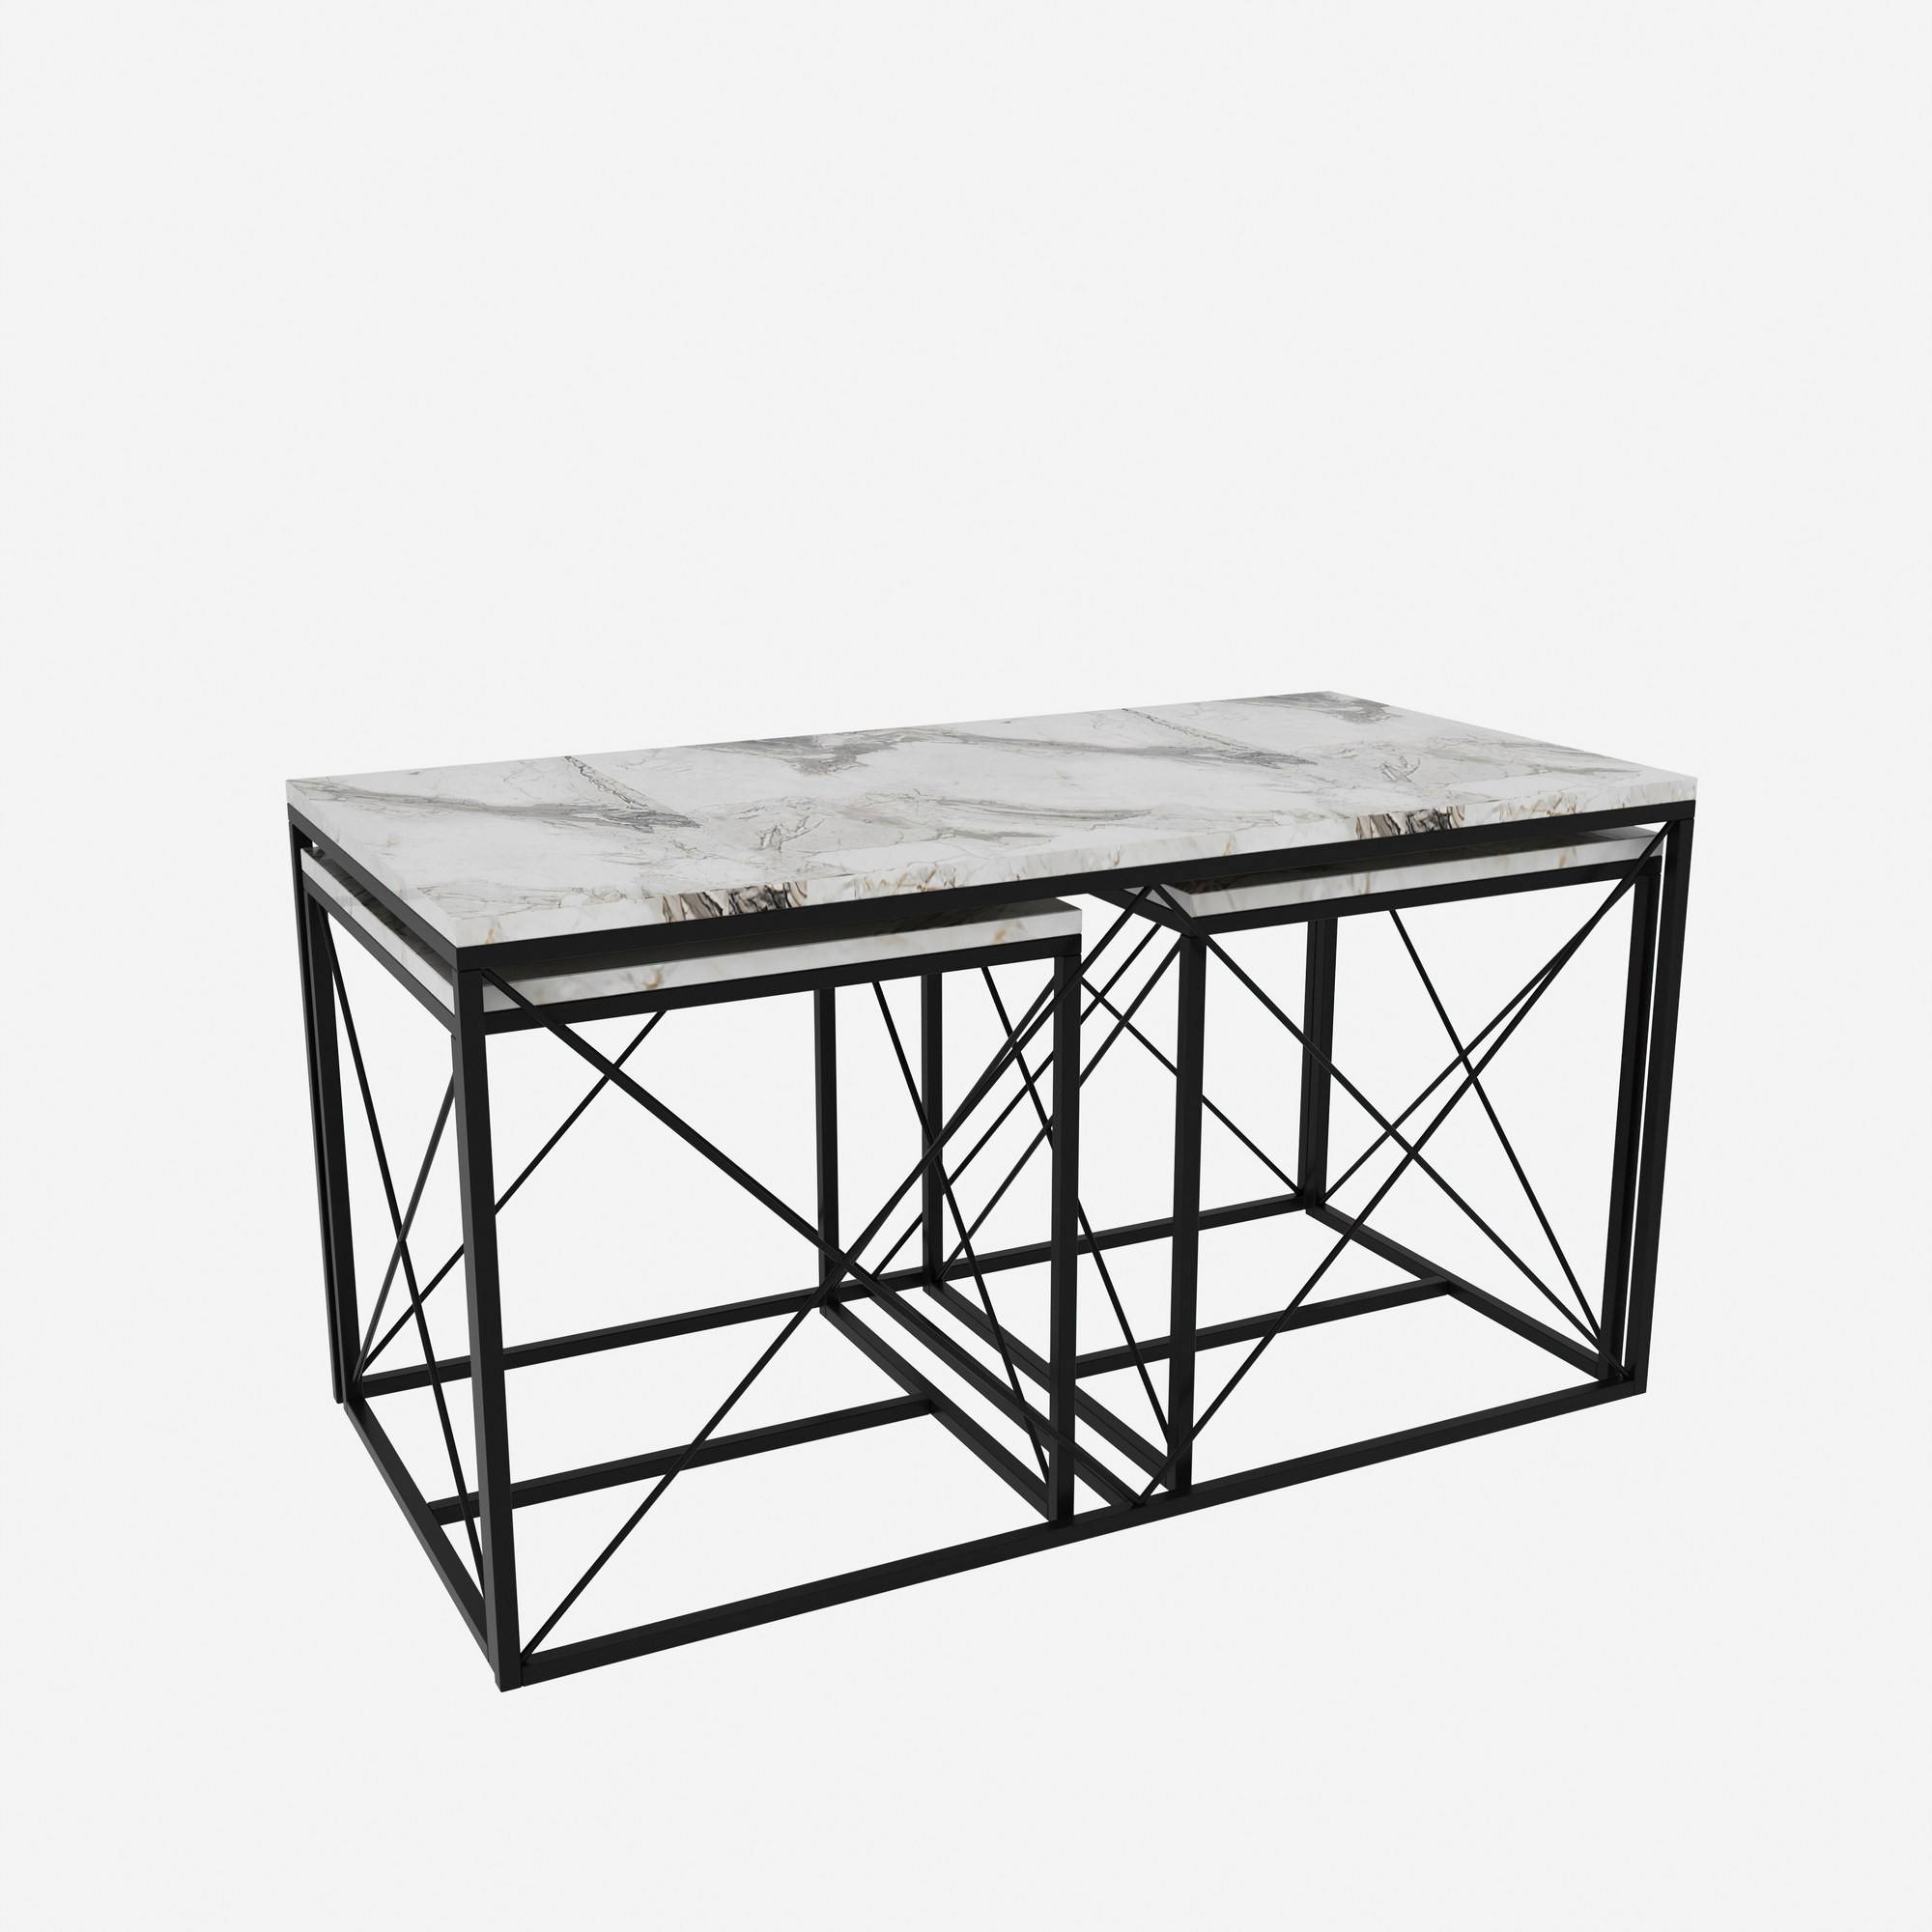 Juego de 3 mesas de centro nido Langkawa de estilo industrial en metal negro y madera blanca efecto mármol